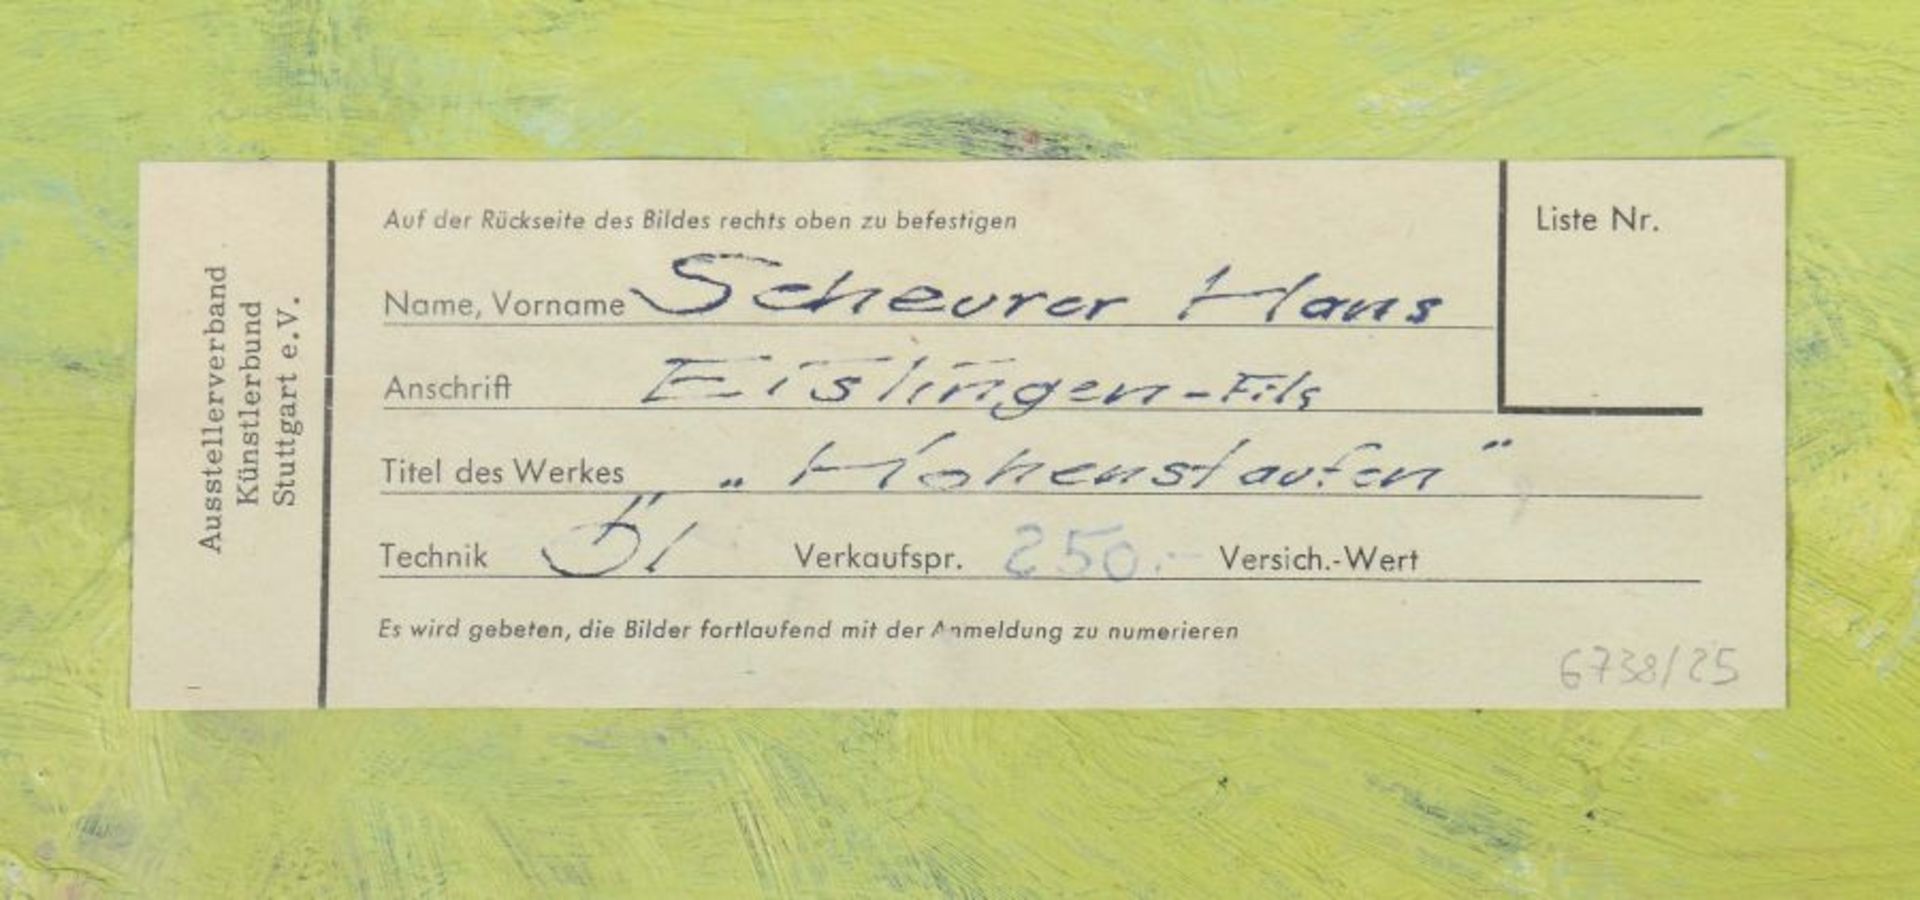 Scheurer, Hans geb. 1905, Maler in Göppingen, Mitglied VBK Württemberg. "Hohenstaufen", stilisierte - Bild 5 aus 5